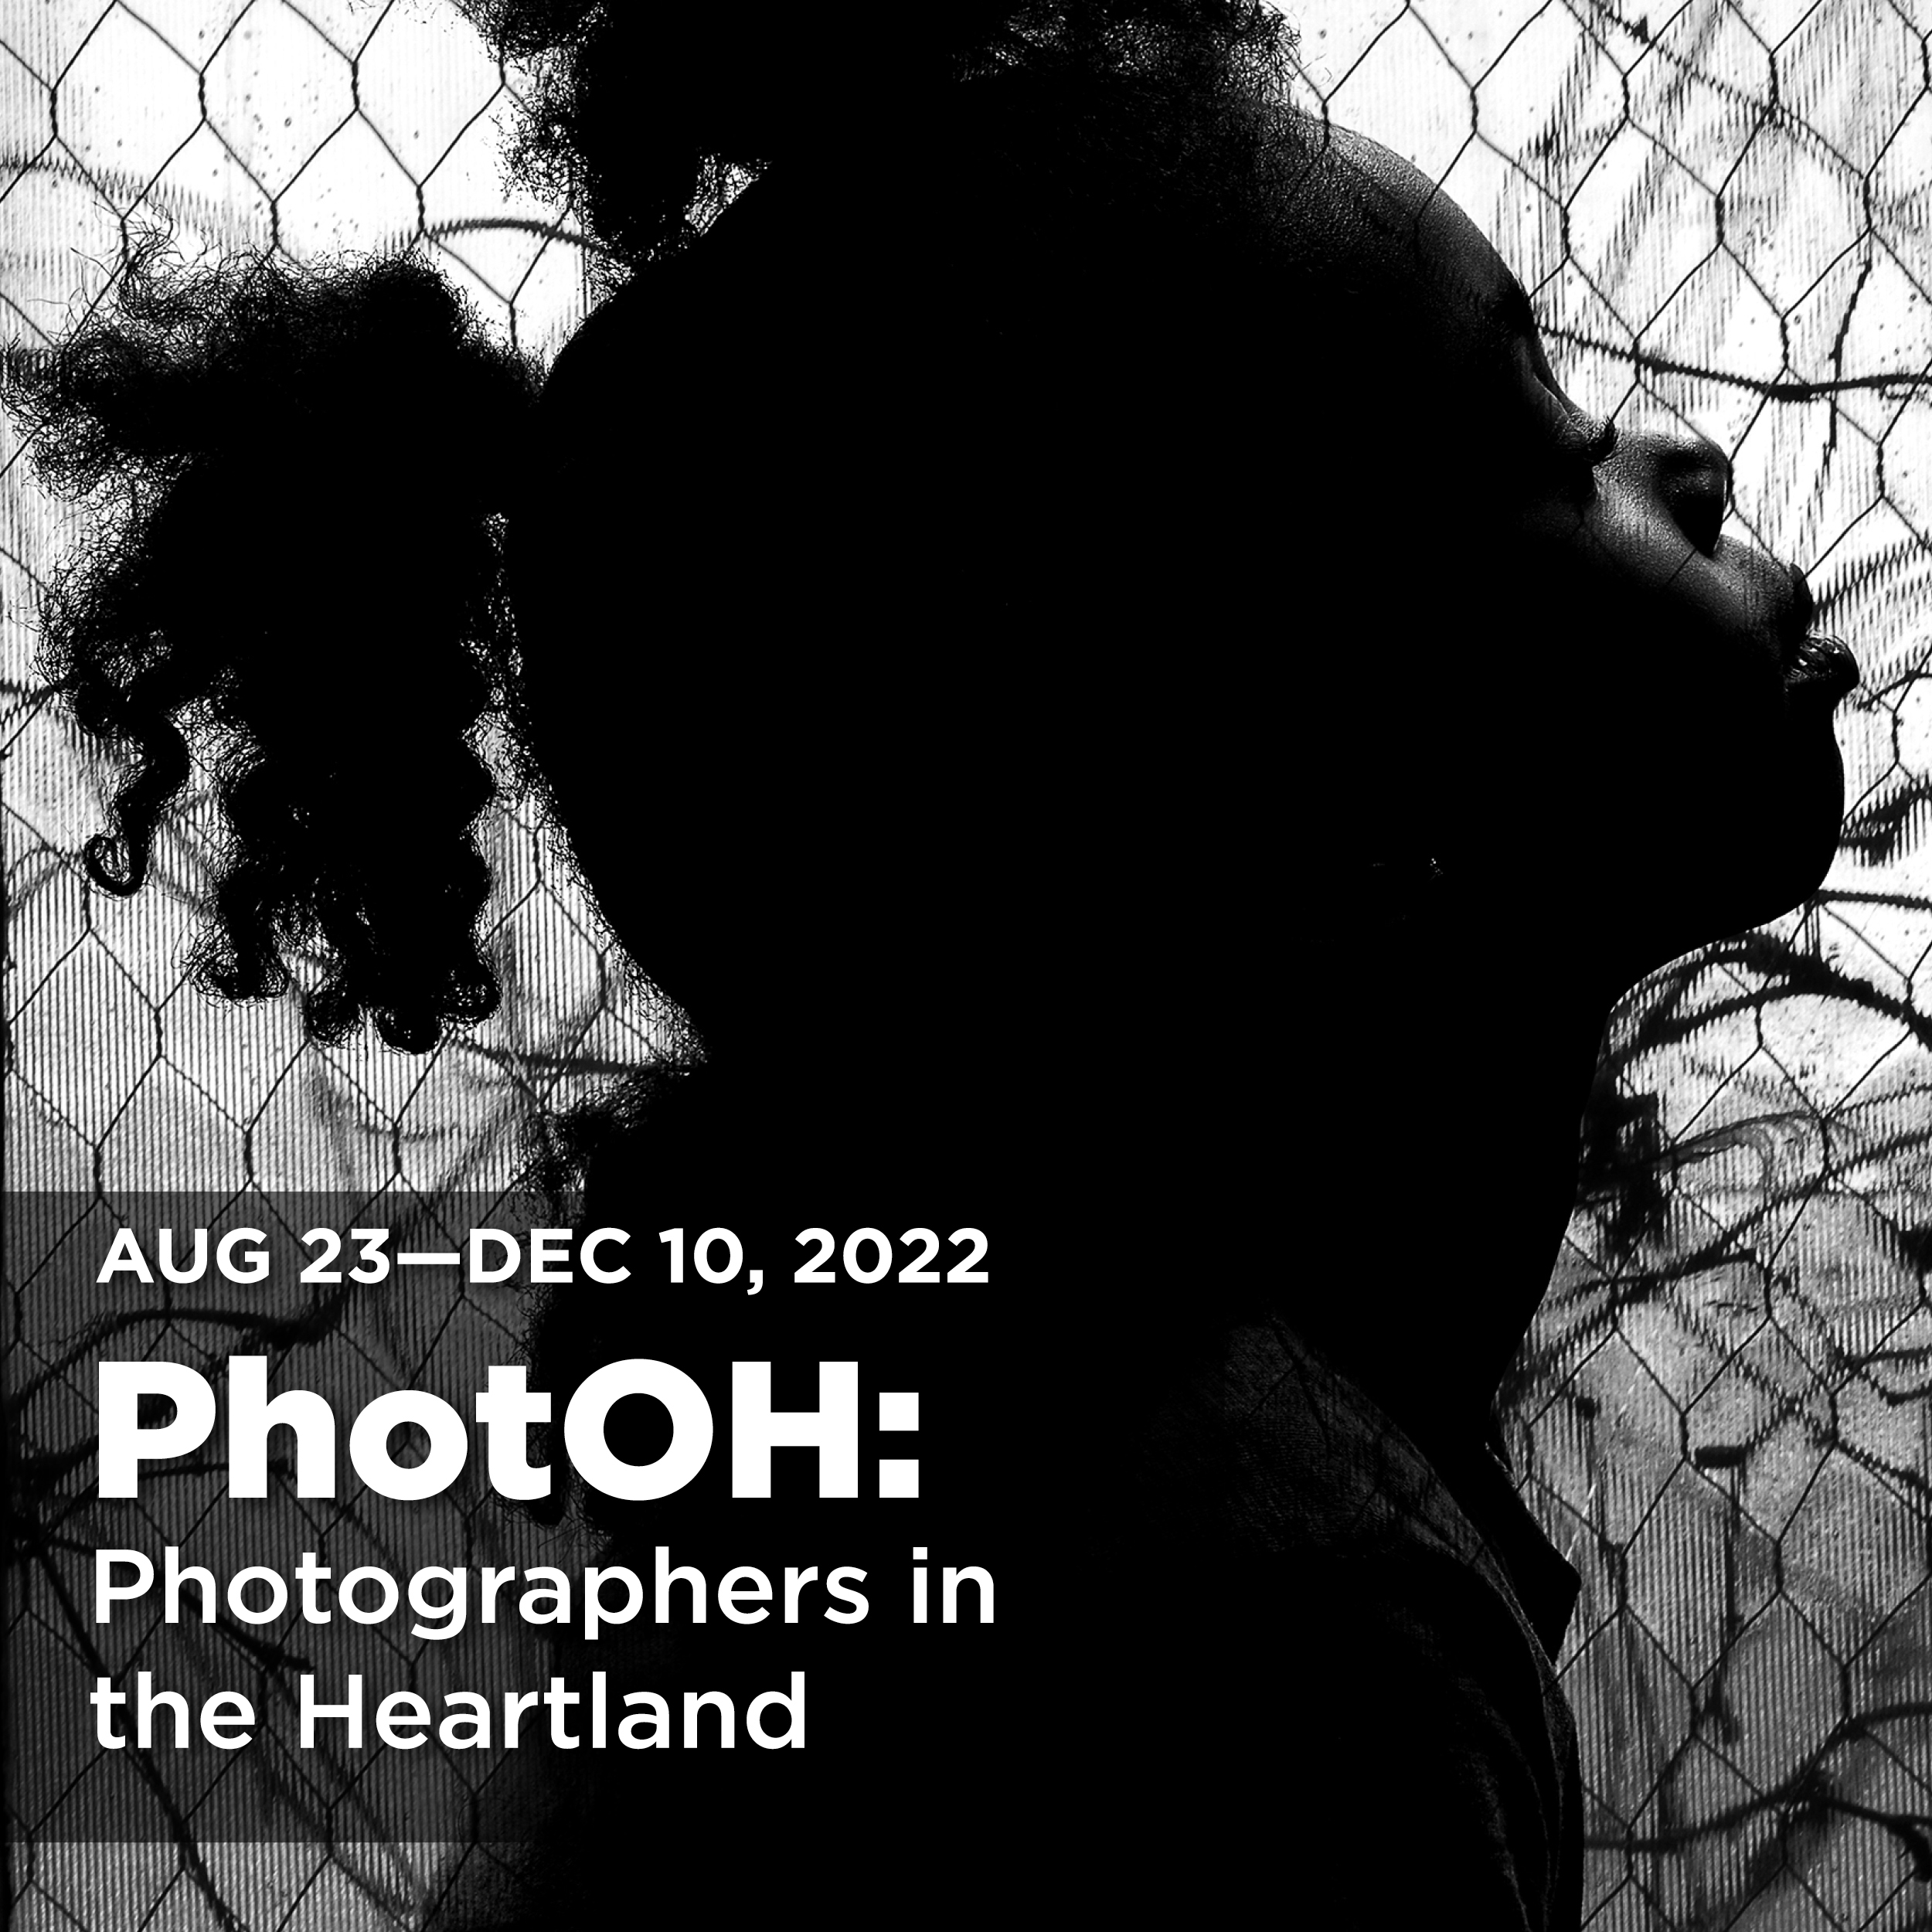  PhotOH exhibition open Aug 23-Dec 10